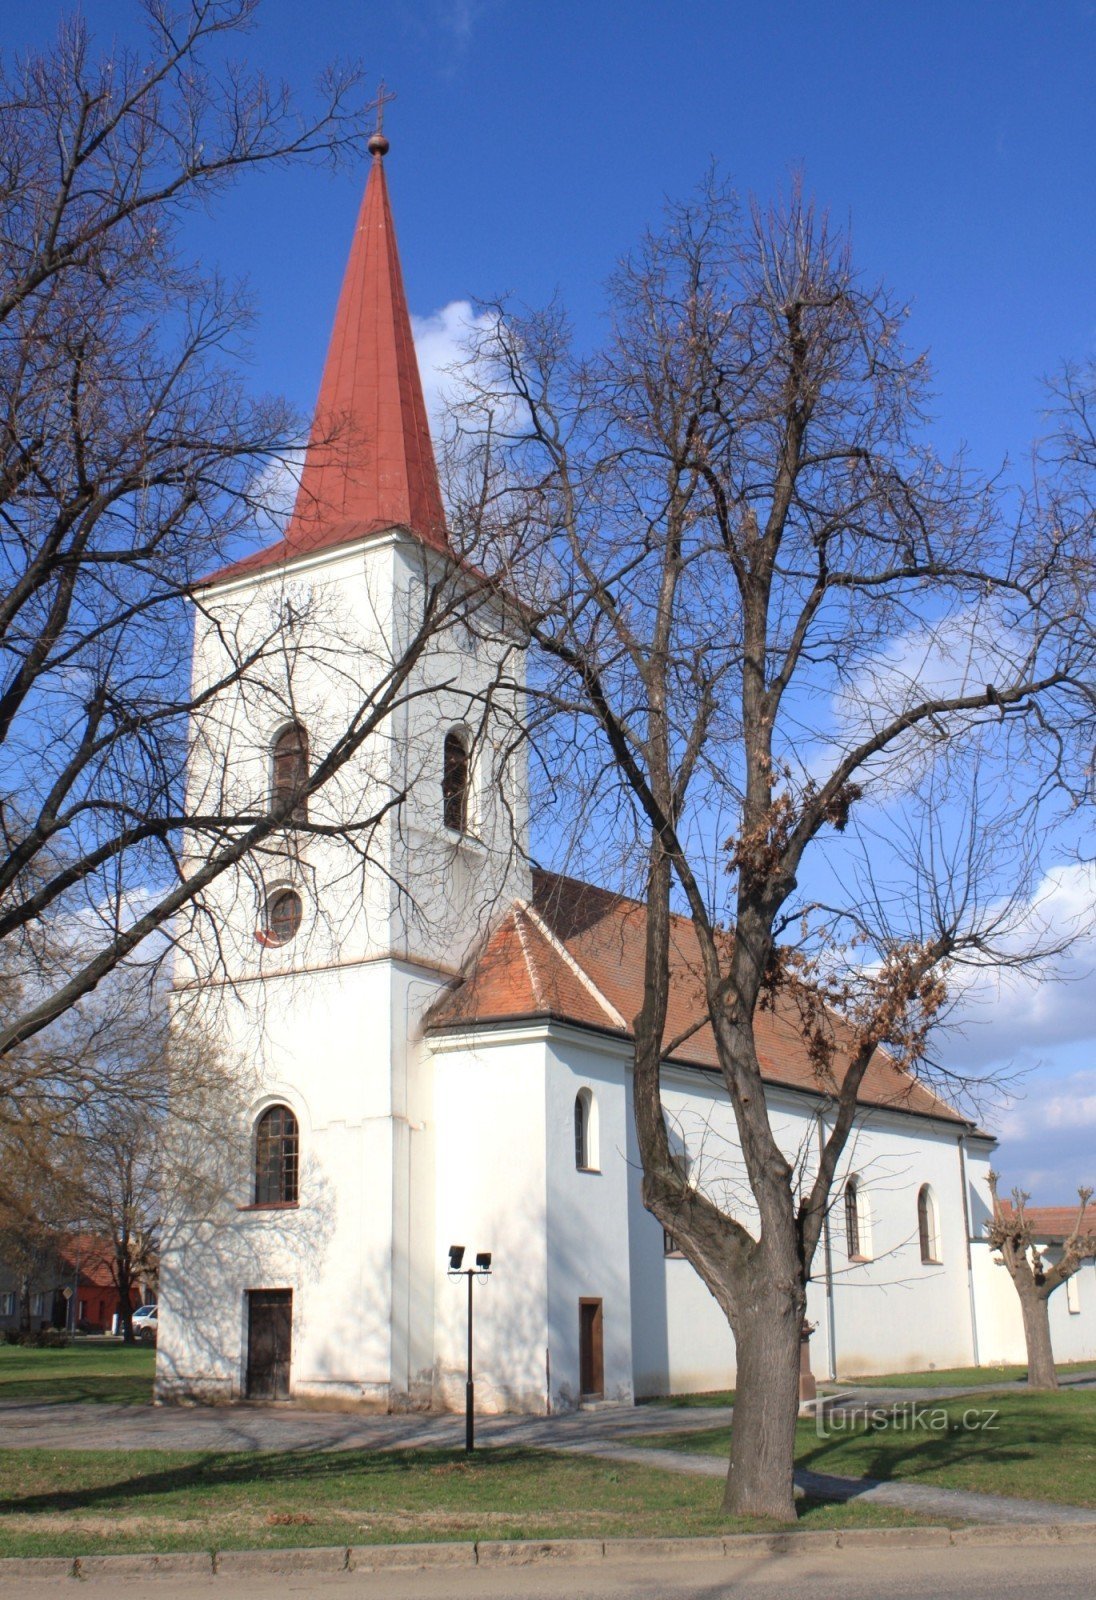 Rakvice - crkva sv. Ivana Krstitelja